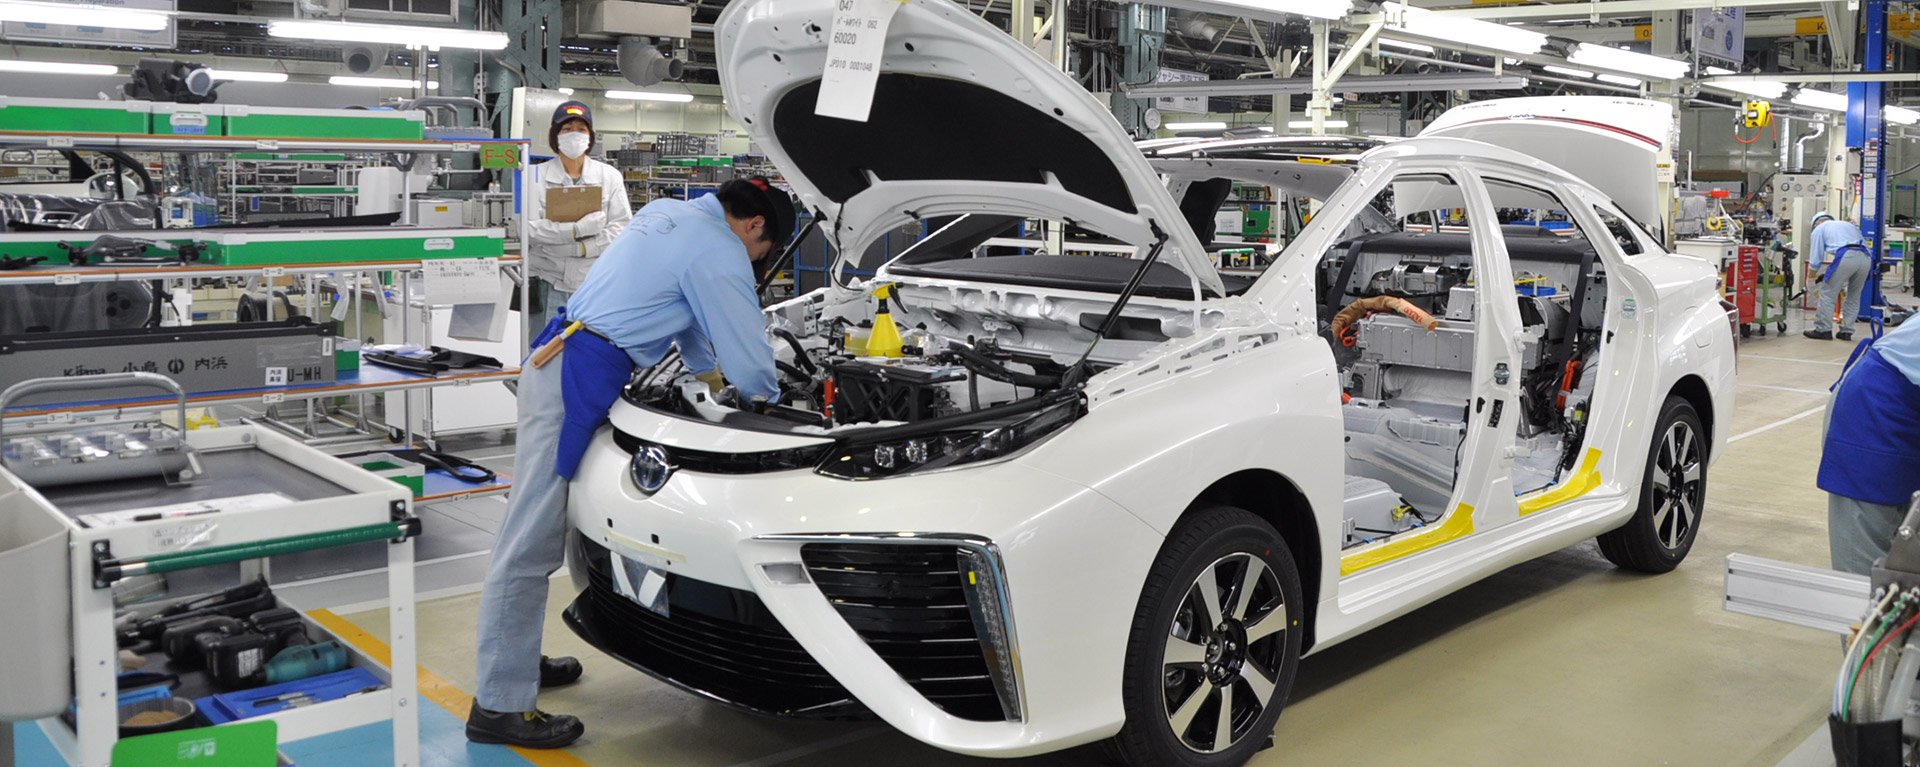 Ein Mechaniker repariert einen weißen, auseinander gebauten Toyota